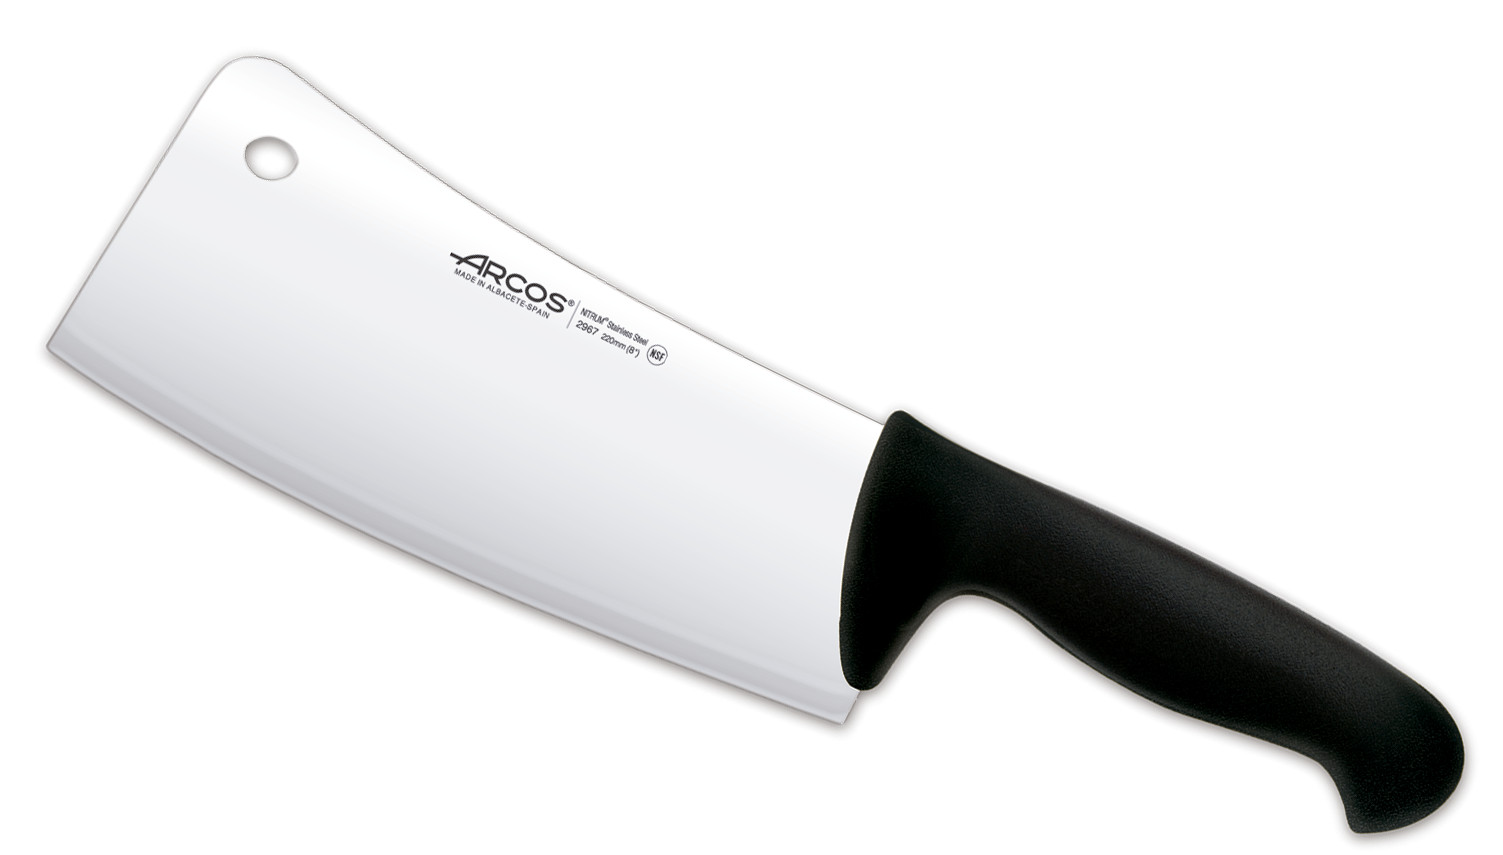 Професионален нож, Cleaver Black, дължина 20см, Arcos